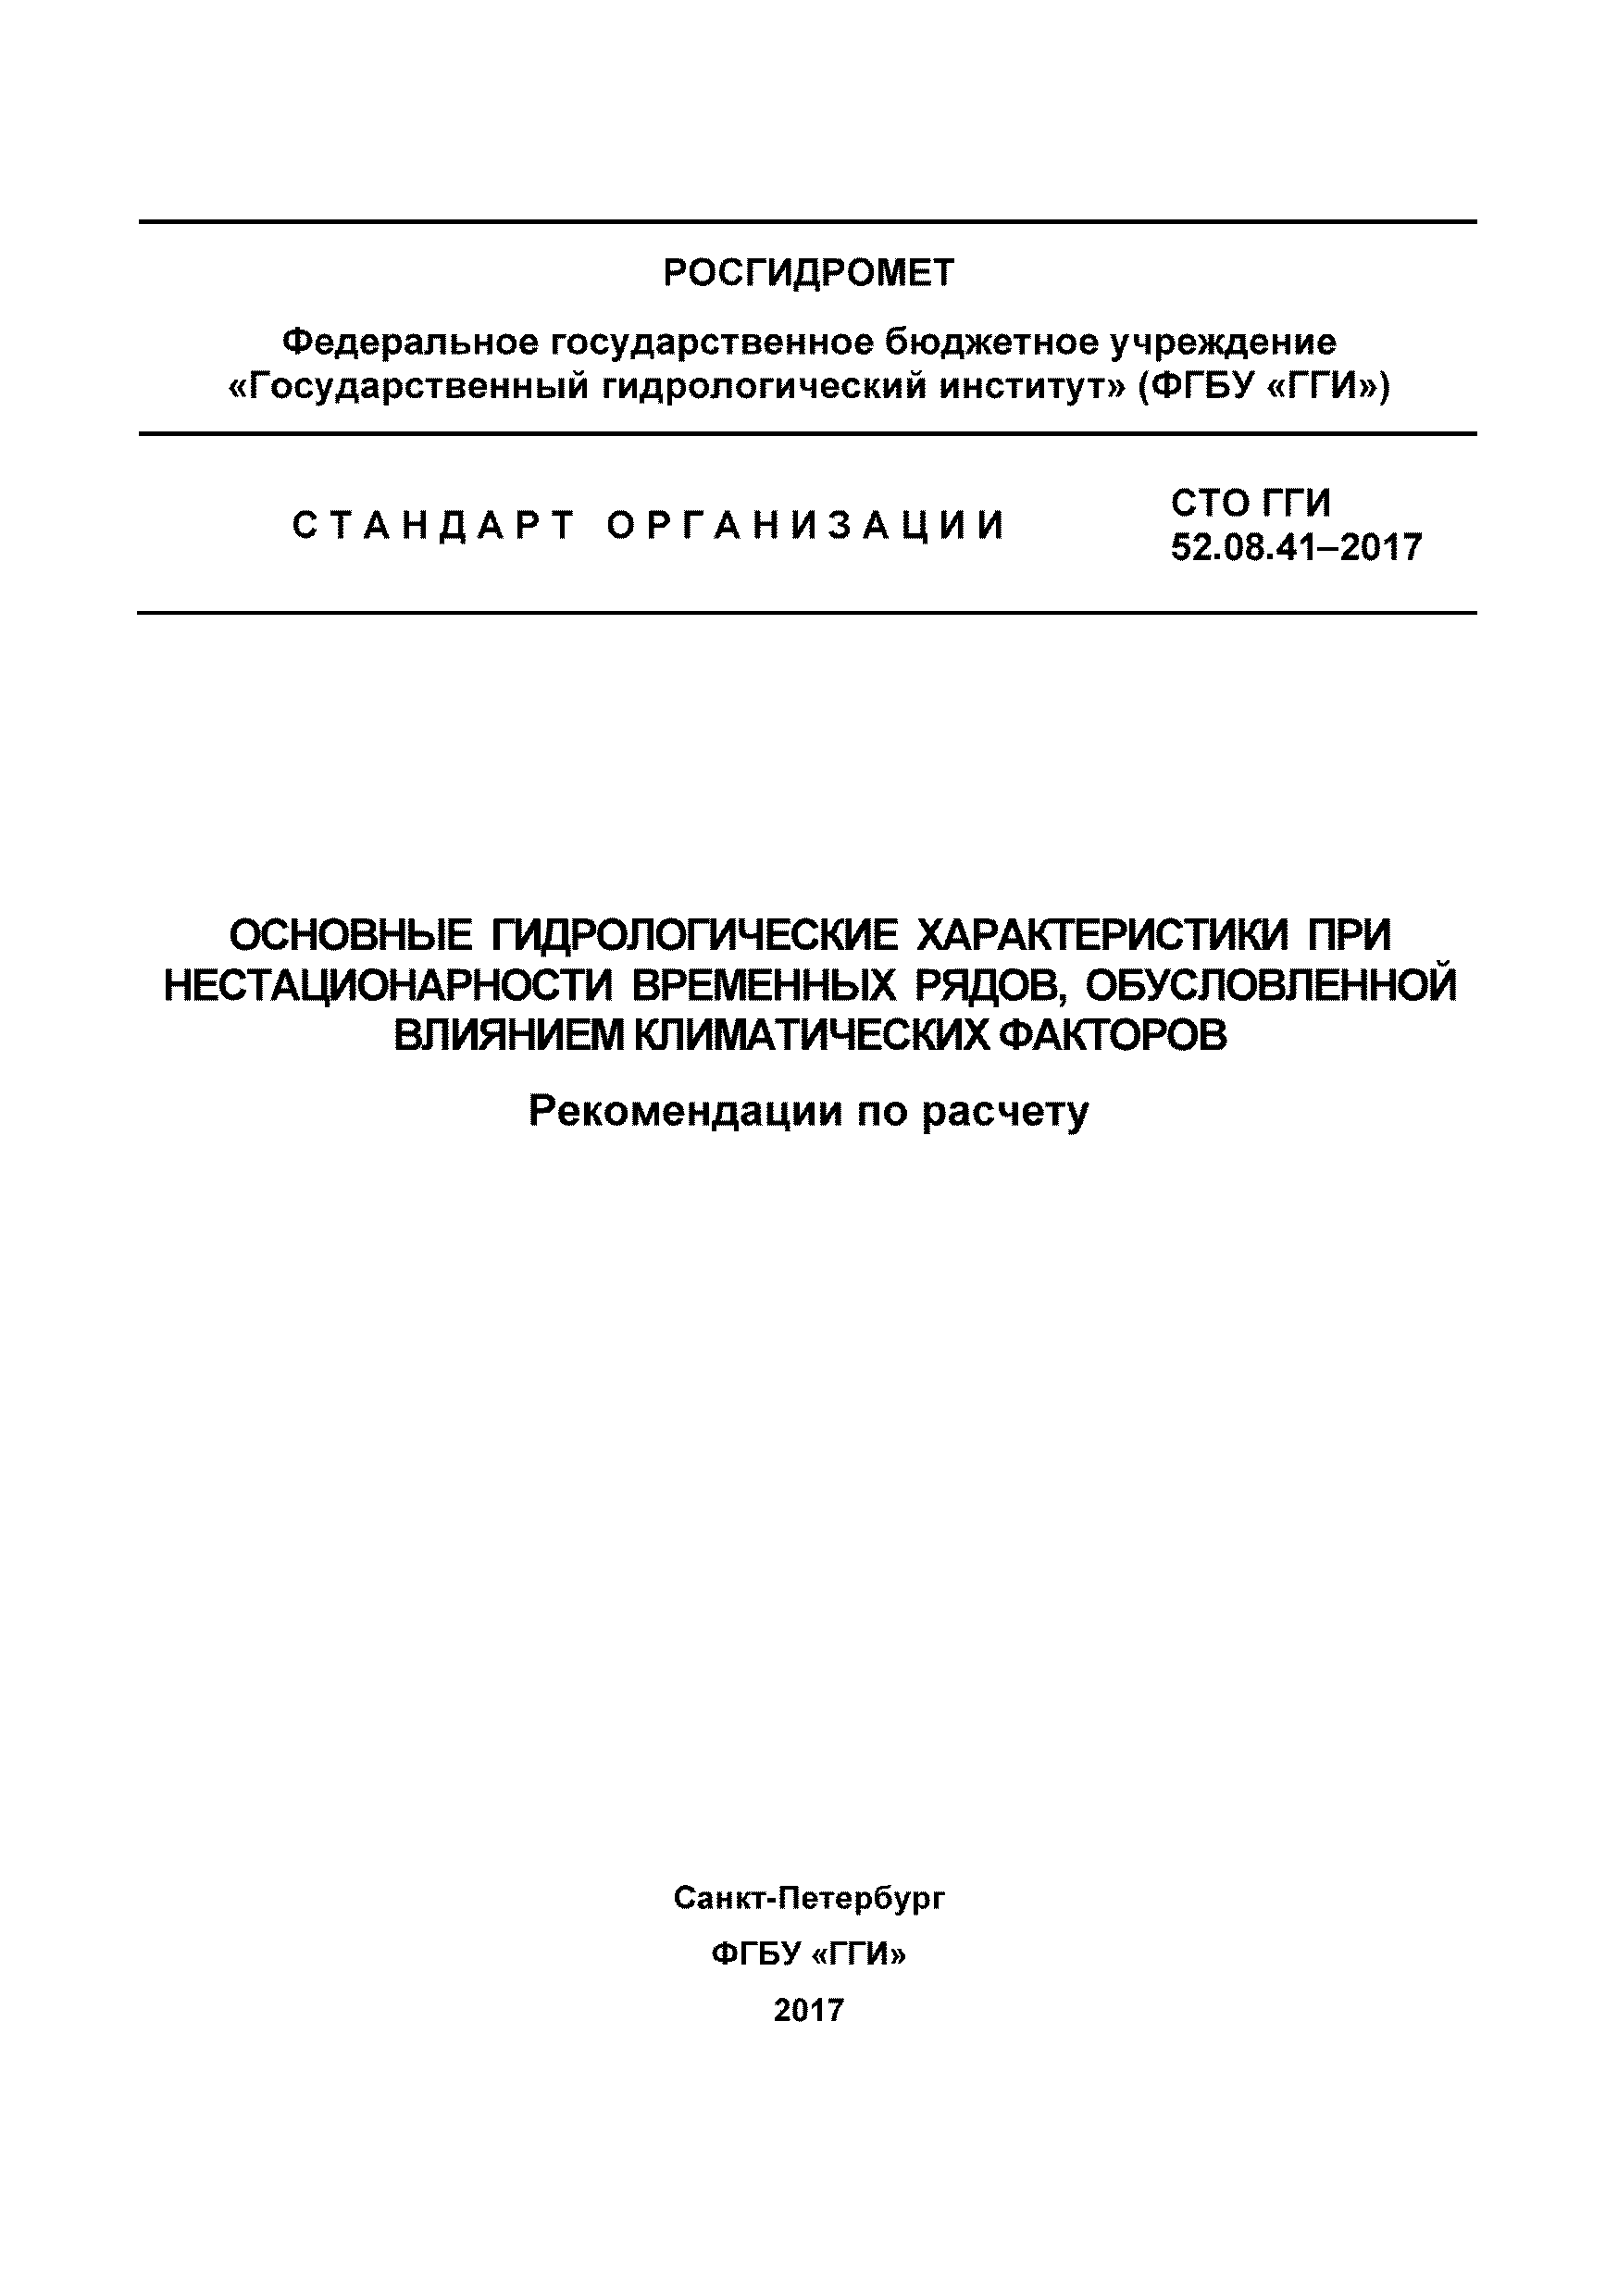 СТО ГГИ 52.08.41-2017